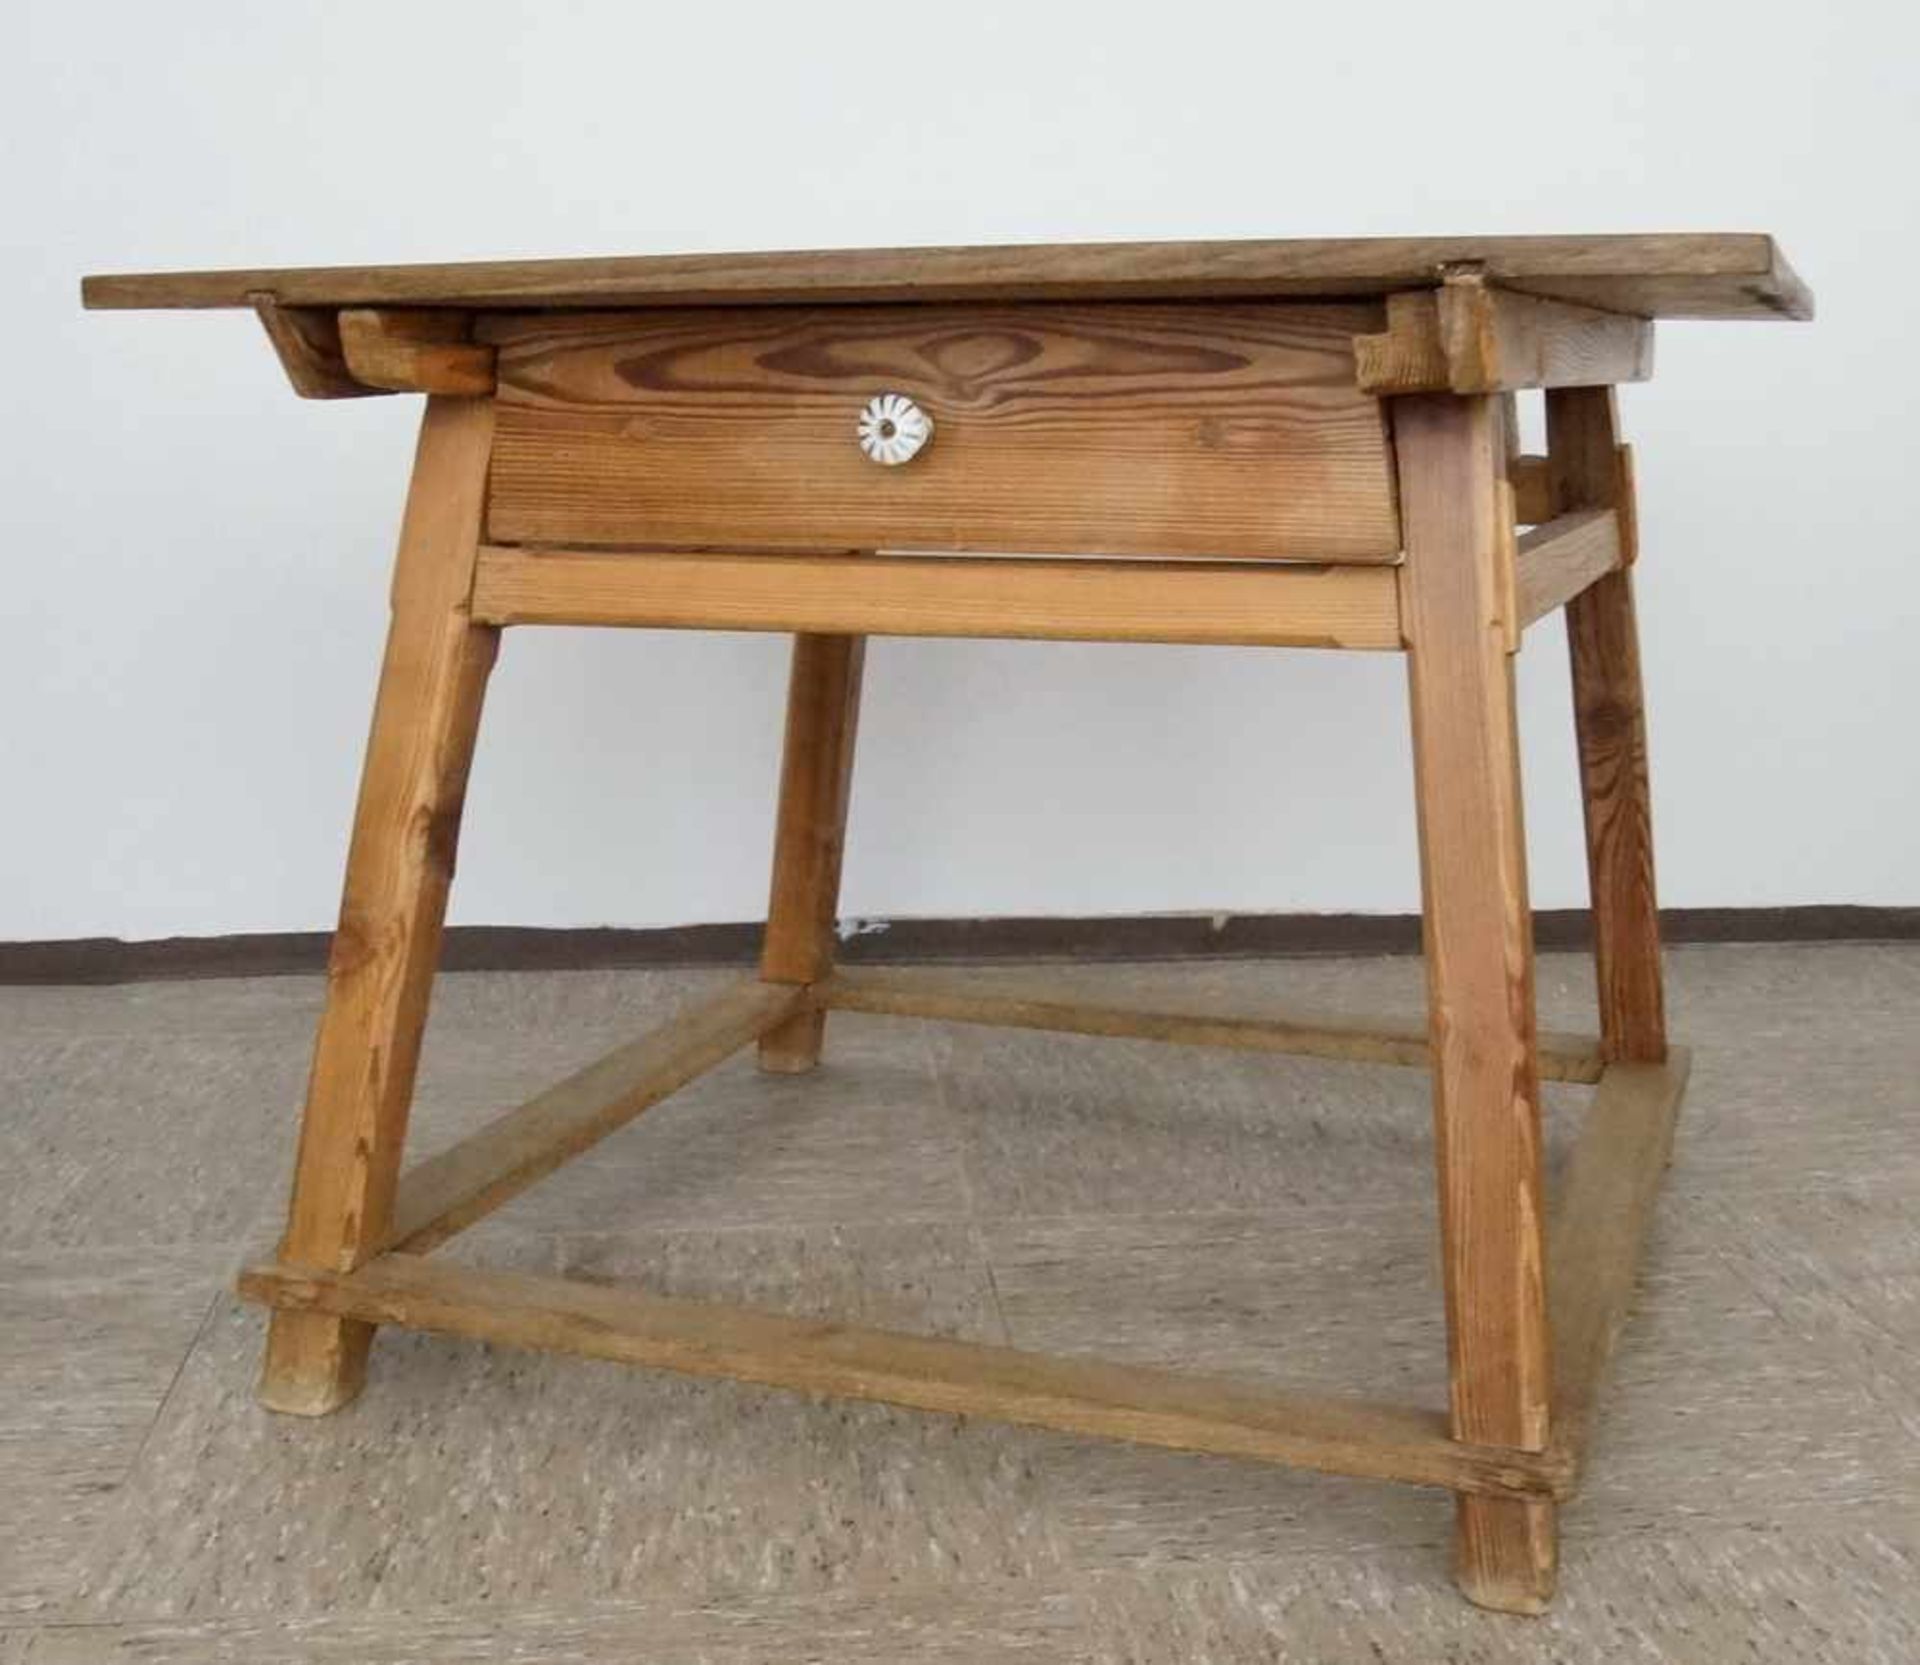 Jogltisch / Rhöntisch mit "Vergeltsgott", einem Schub, Porzellanknauf, 77x100x97cm- - -24.00 % - Bild 4 aus 5